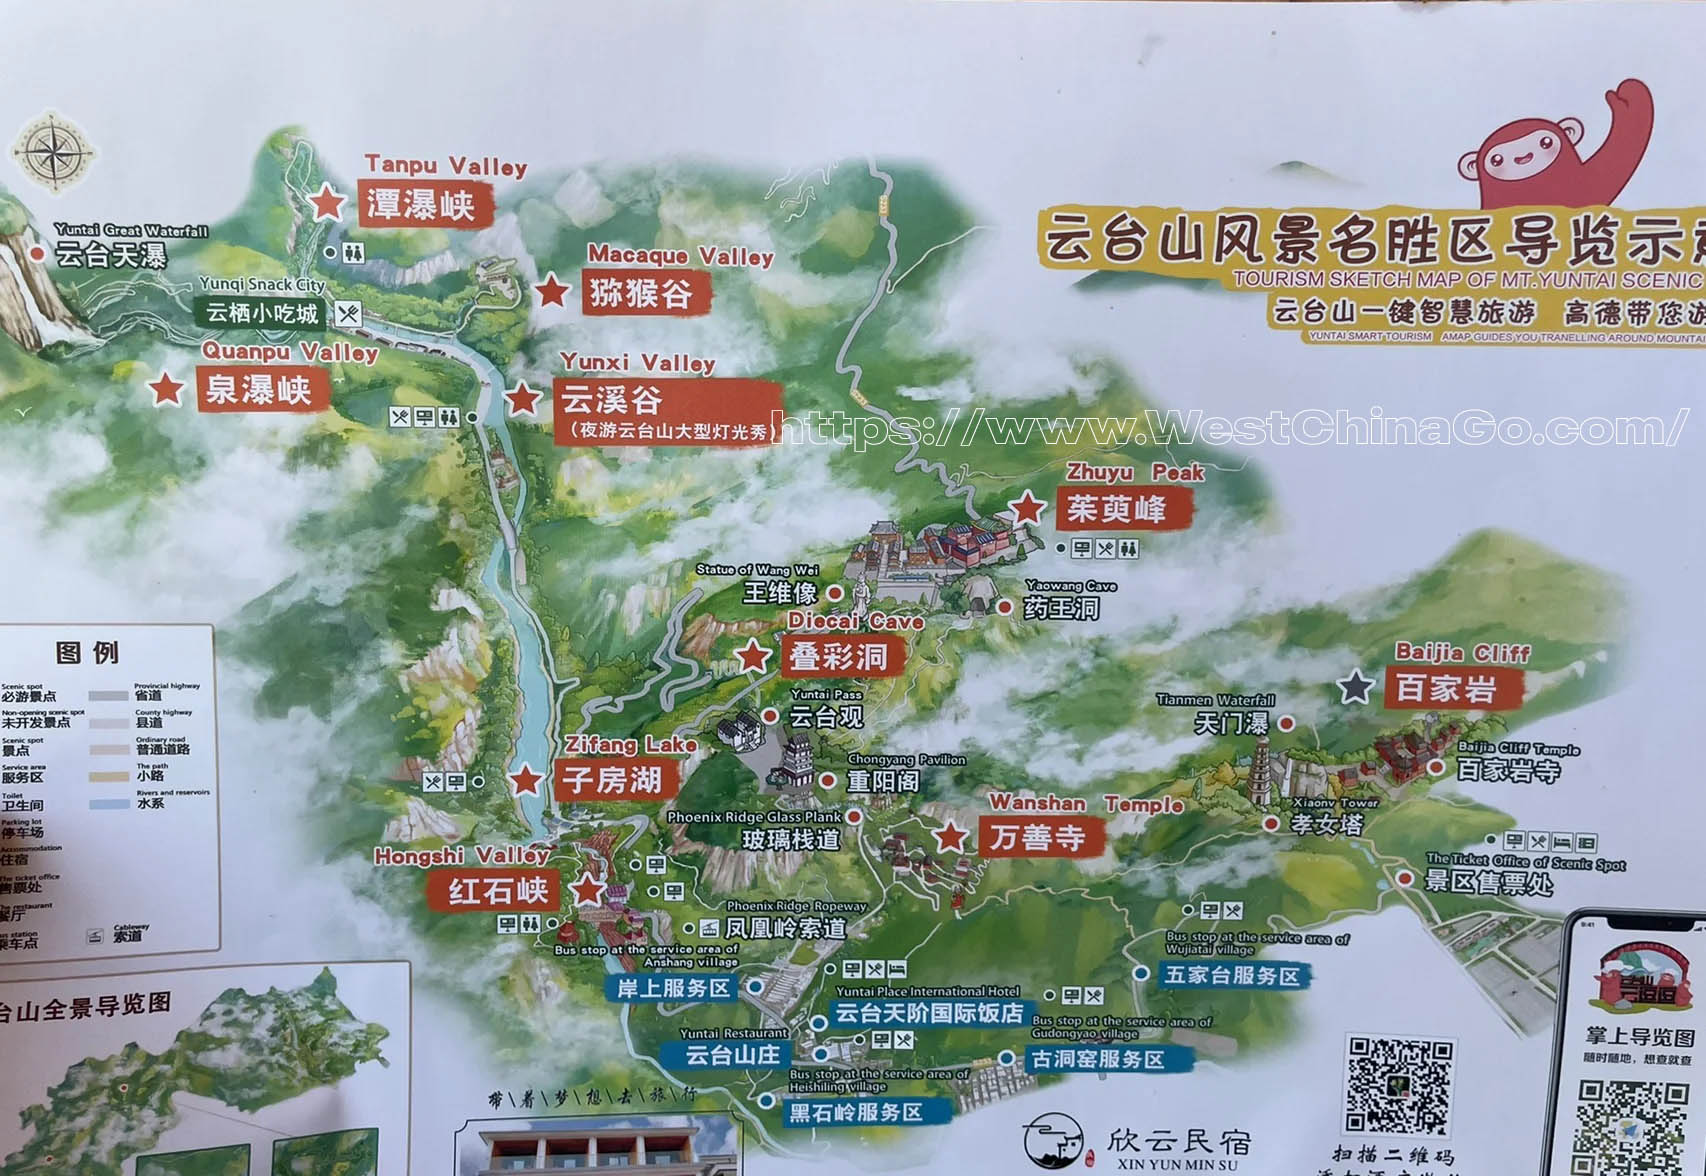 Henan Yuntai Mountain Scenic Area